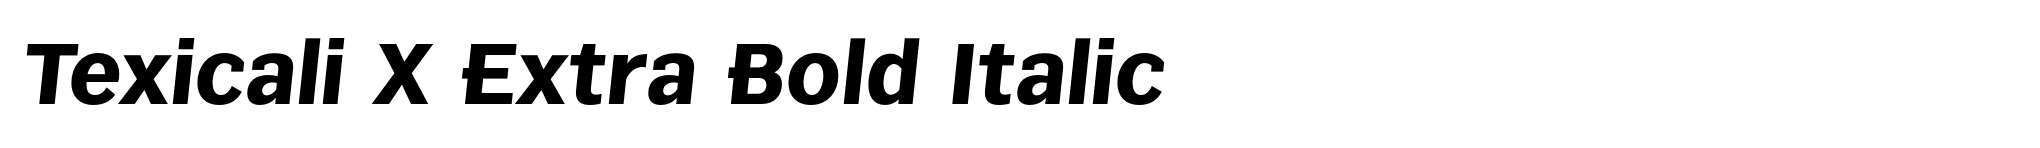 Texicali X Extra Bold Italic image